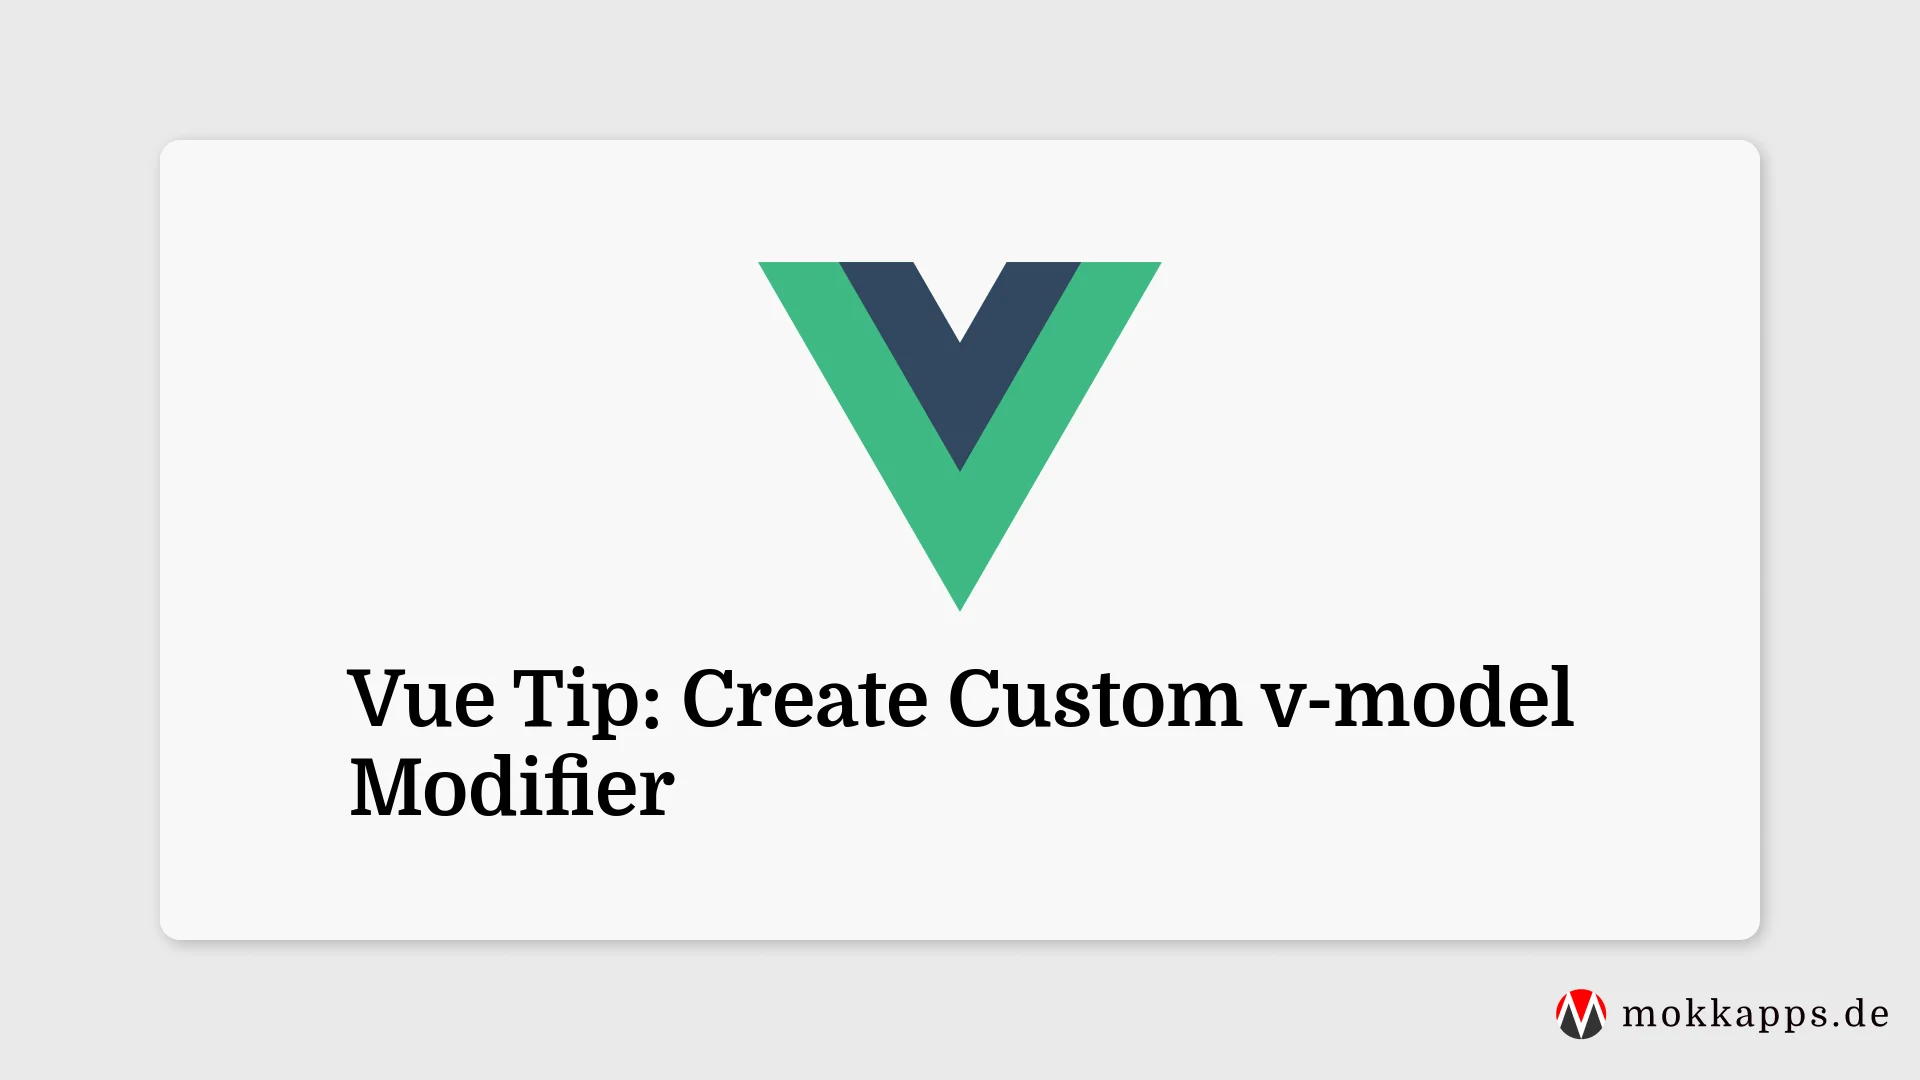 Vue Tip: Create Custom v-model Modifier Image